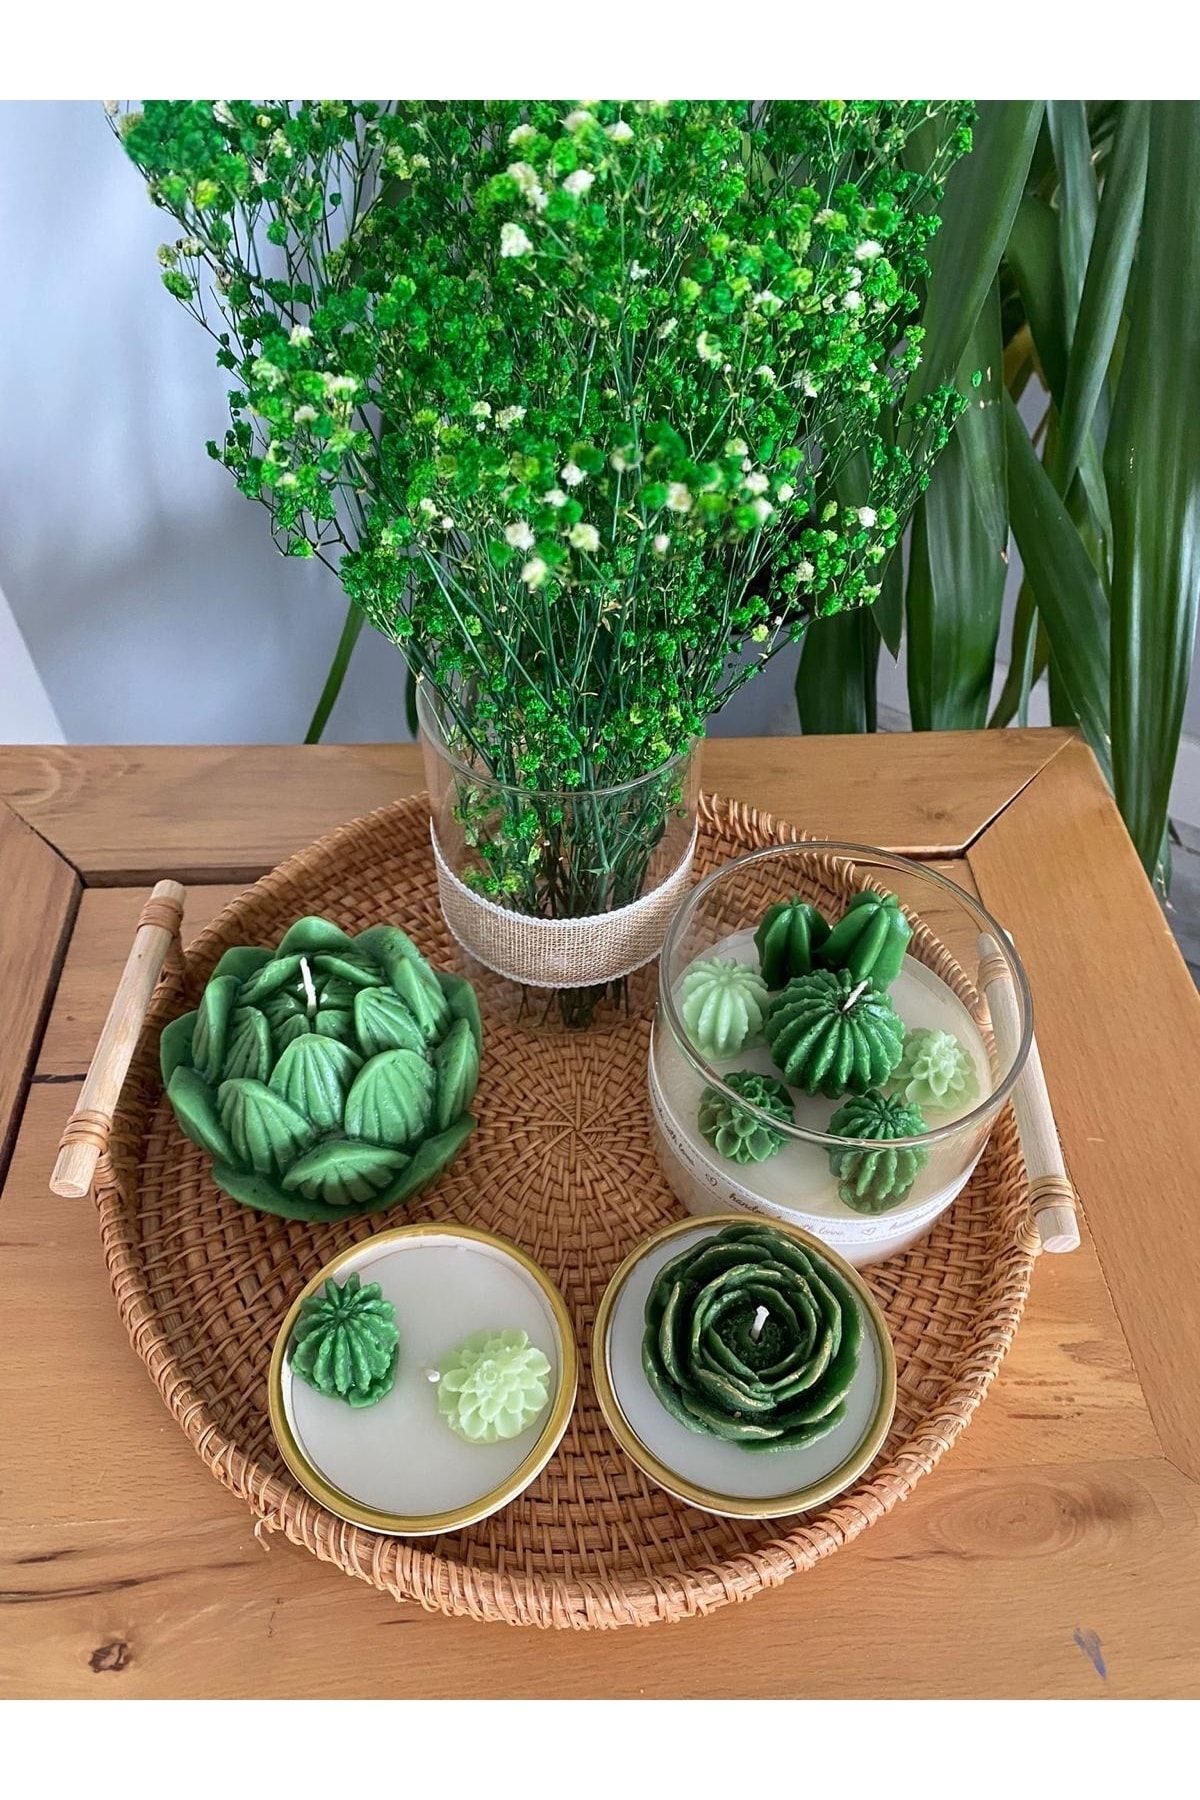 pixiperi Kulplu Hasır Tepsili Dekoratif Mum Ve Cam Vazo Yeşil Çiçek Kaktüs Temalı 6lı Set